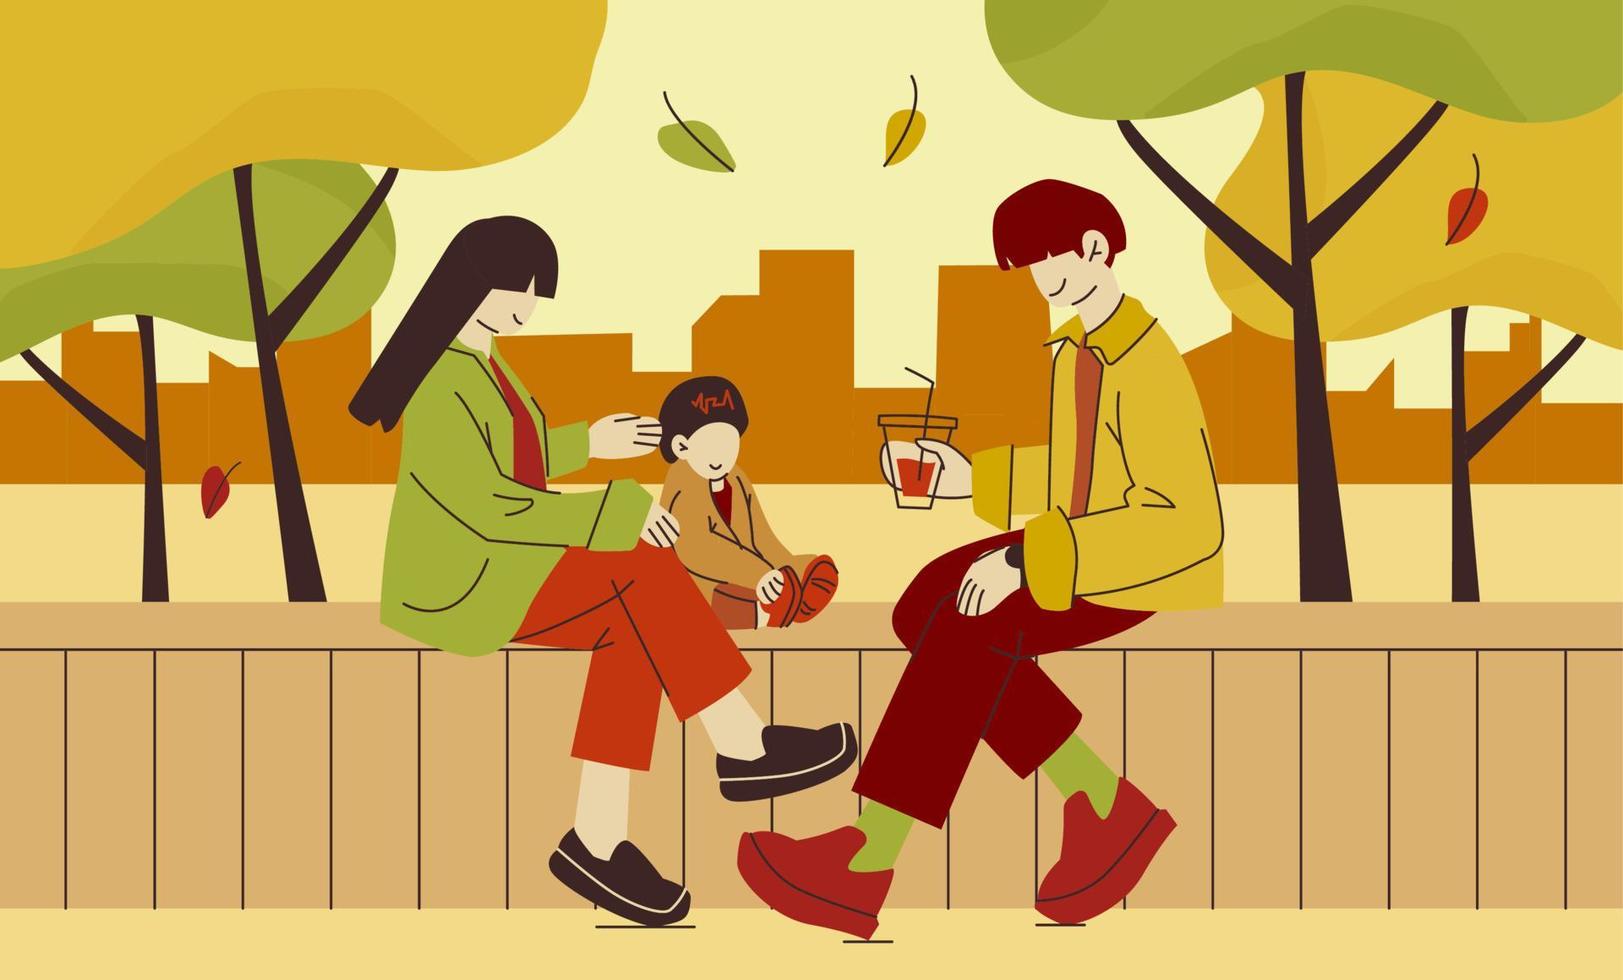 la famille est assise sur un banc sous les arbres à l'automne. homme, femme et enfant à l'extérieur passent du temps ensemble. illustration colorée de vecteur plat moderne.